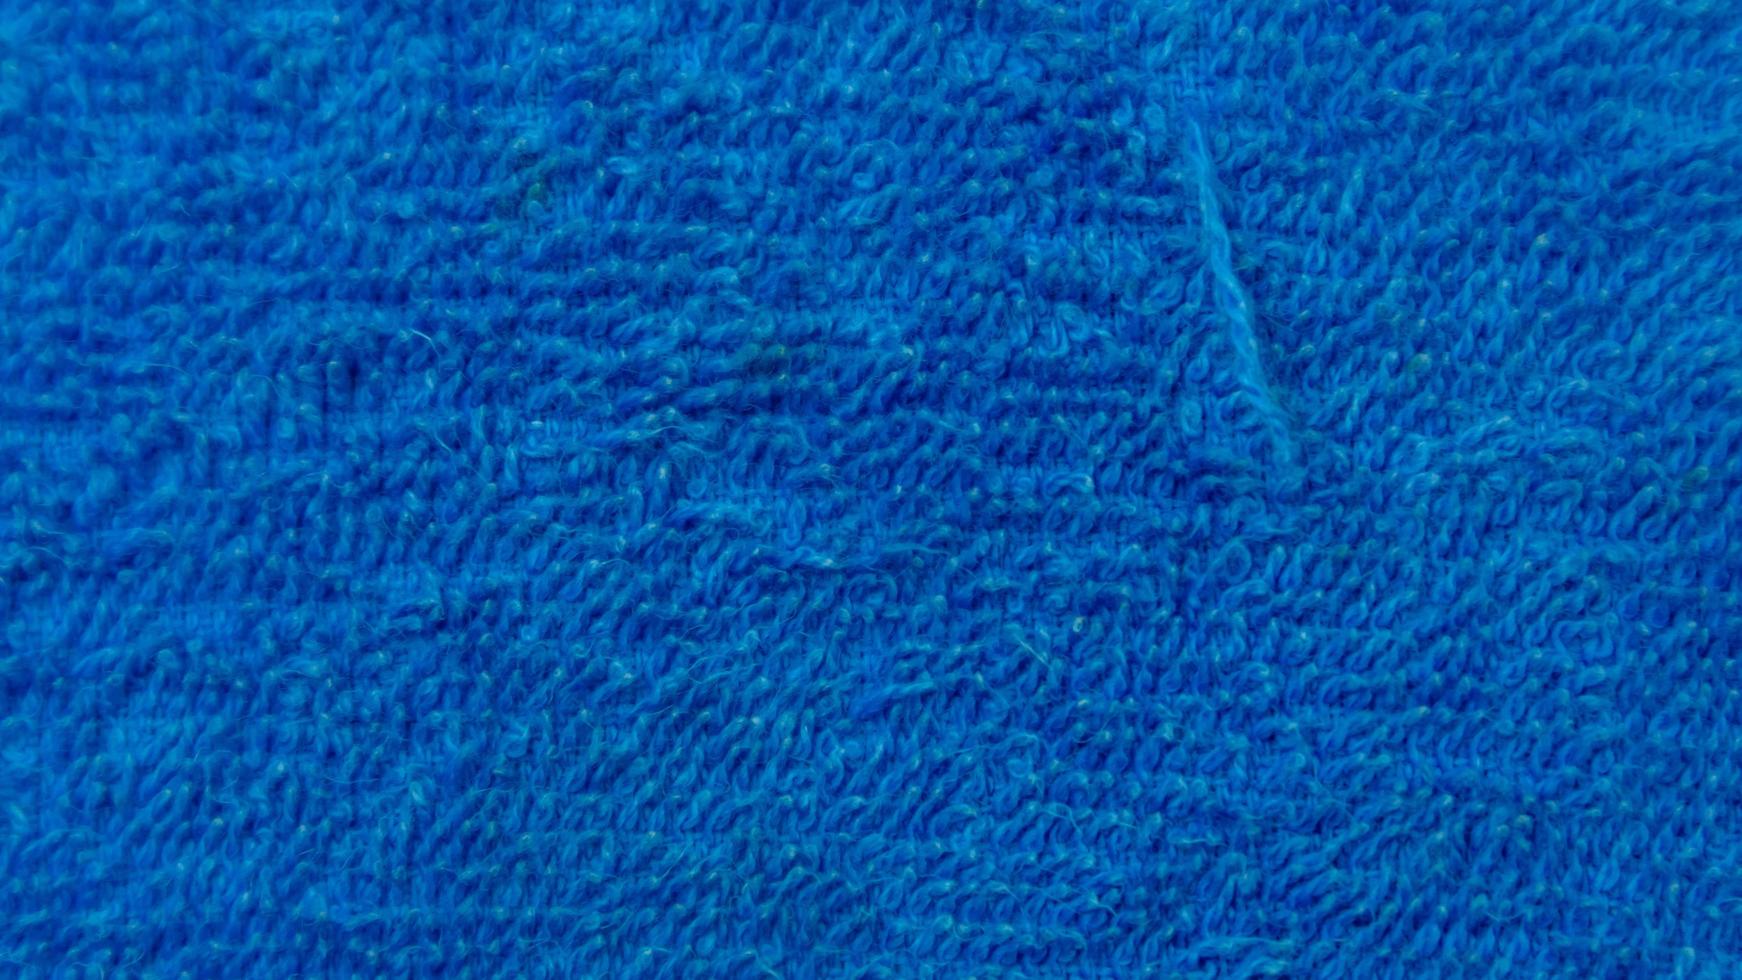 textura de toalla azul como fondo foto